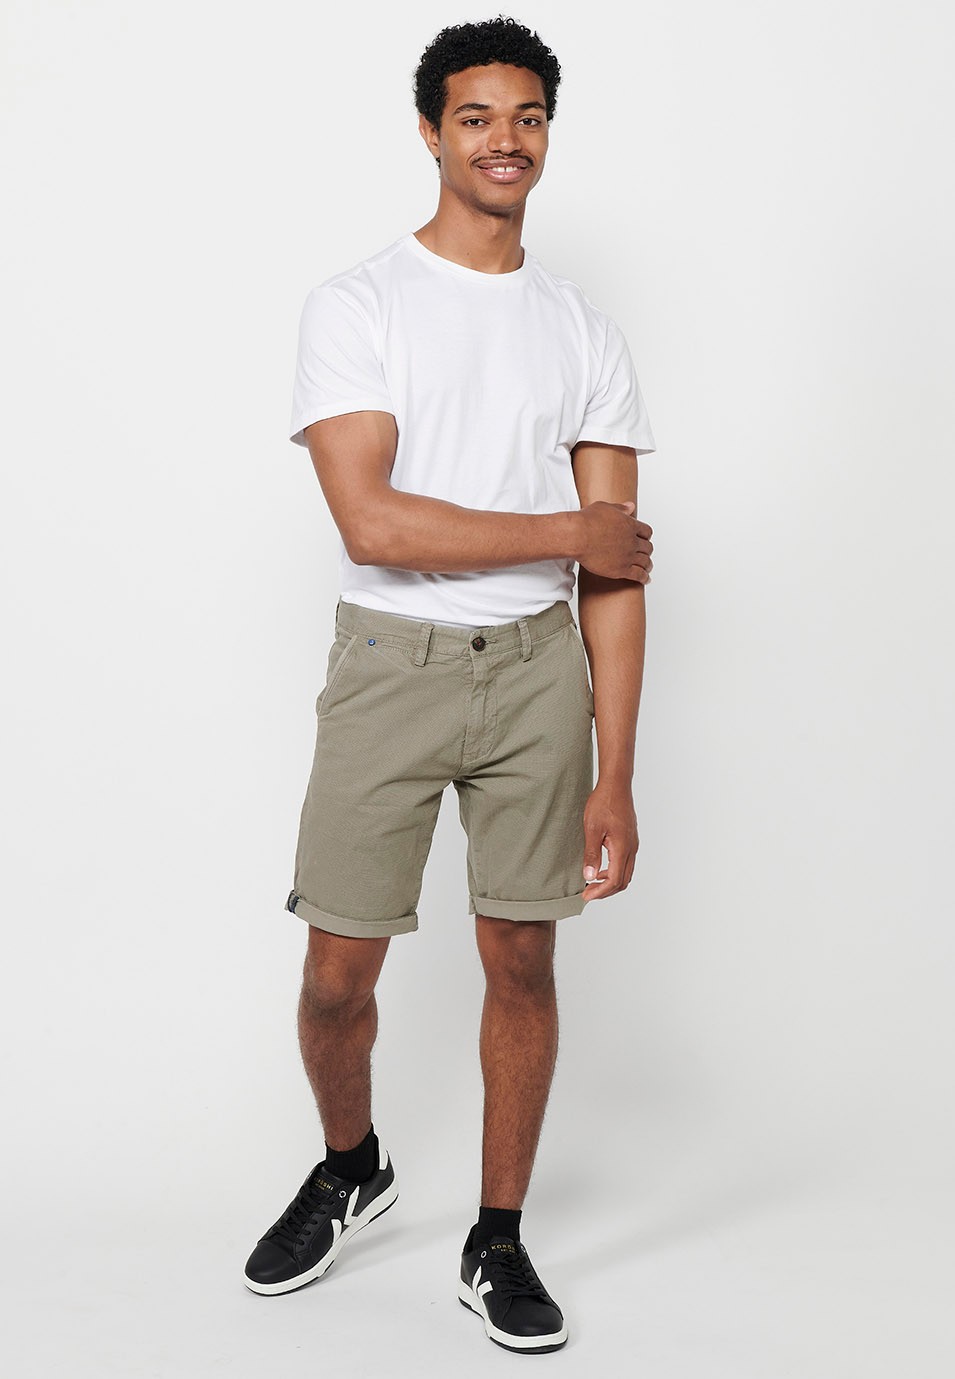 Herren-Bermuda-Chino-Shorts mit Umschlag, Reißverschluss vorne und Knopfverschluss sowie vier Taschen in Nerzfarbe